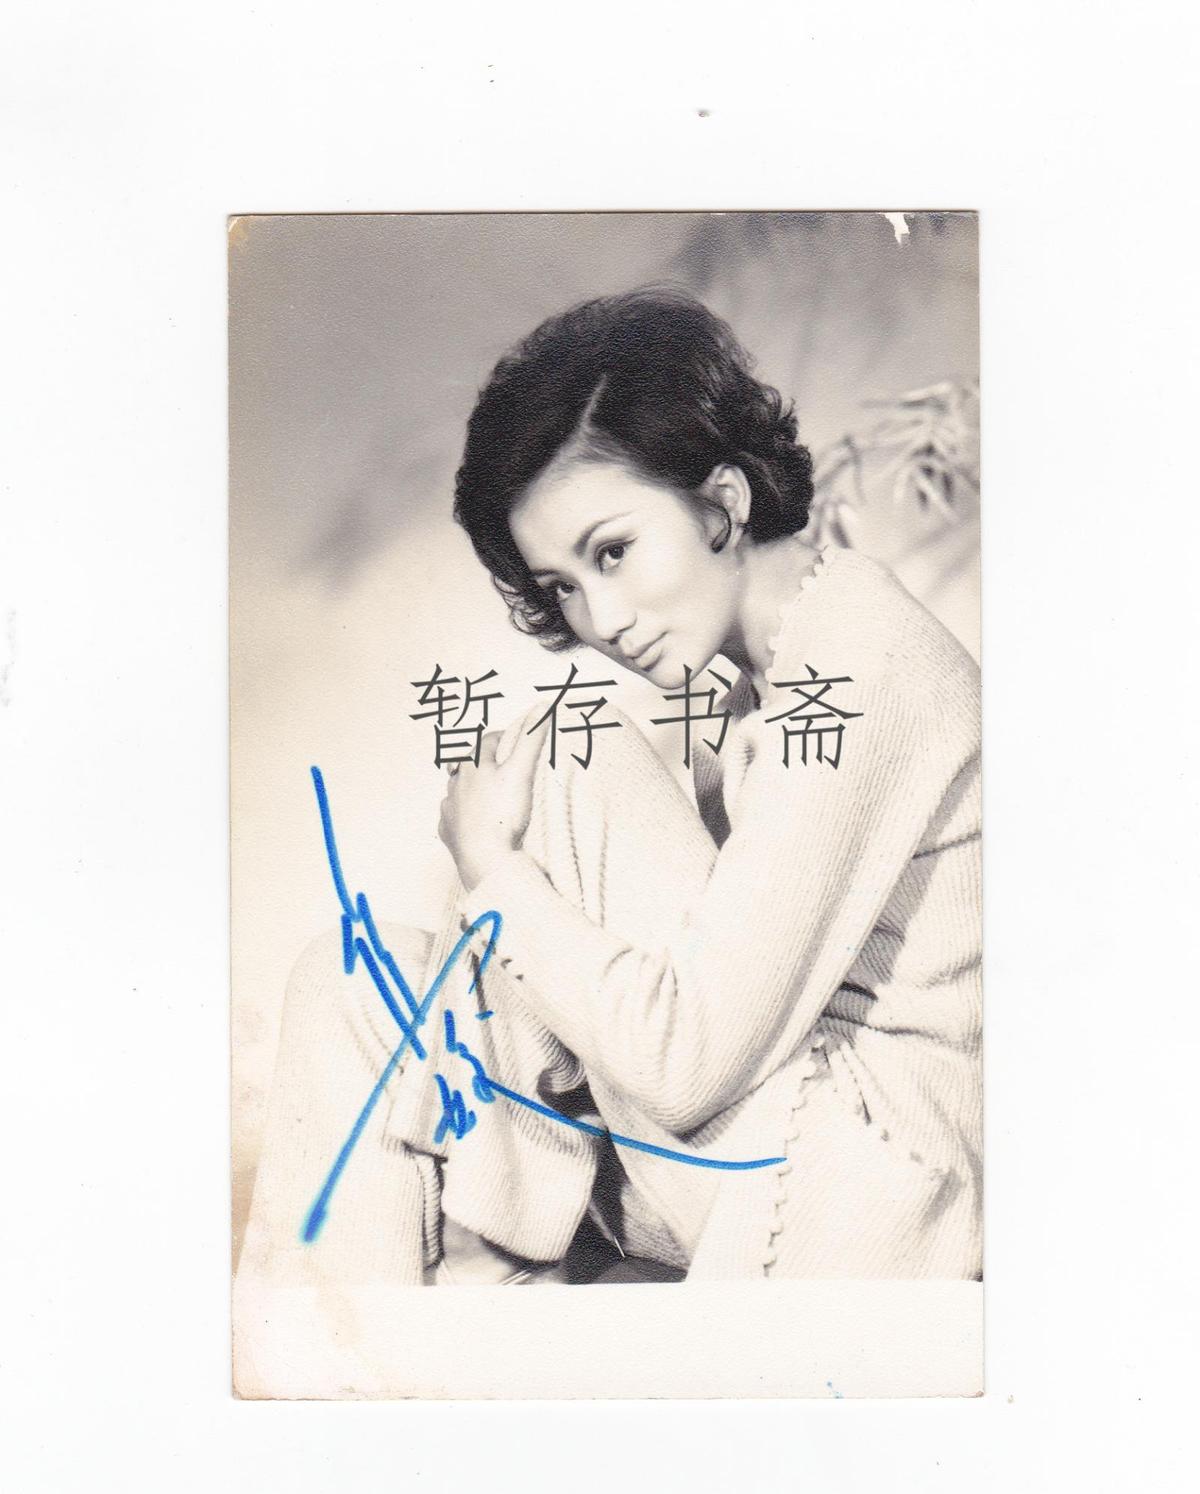 香港著名影星 【焦姣】邵氏女星 曾江妻子 签名照片一张